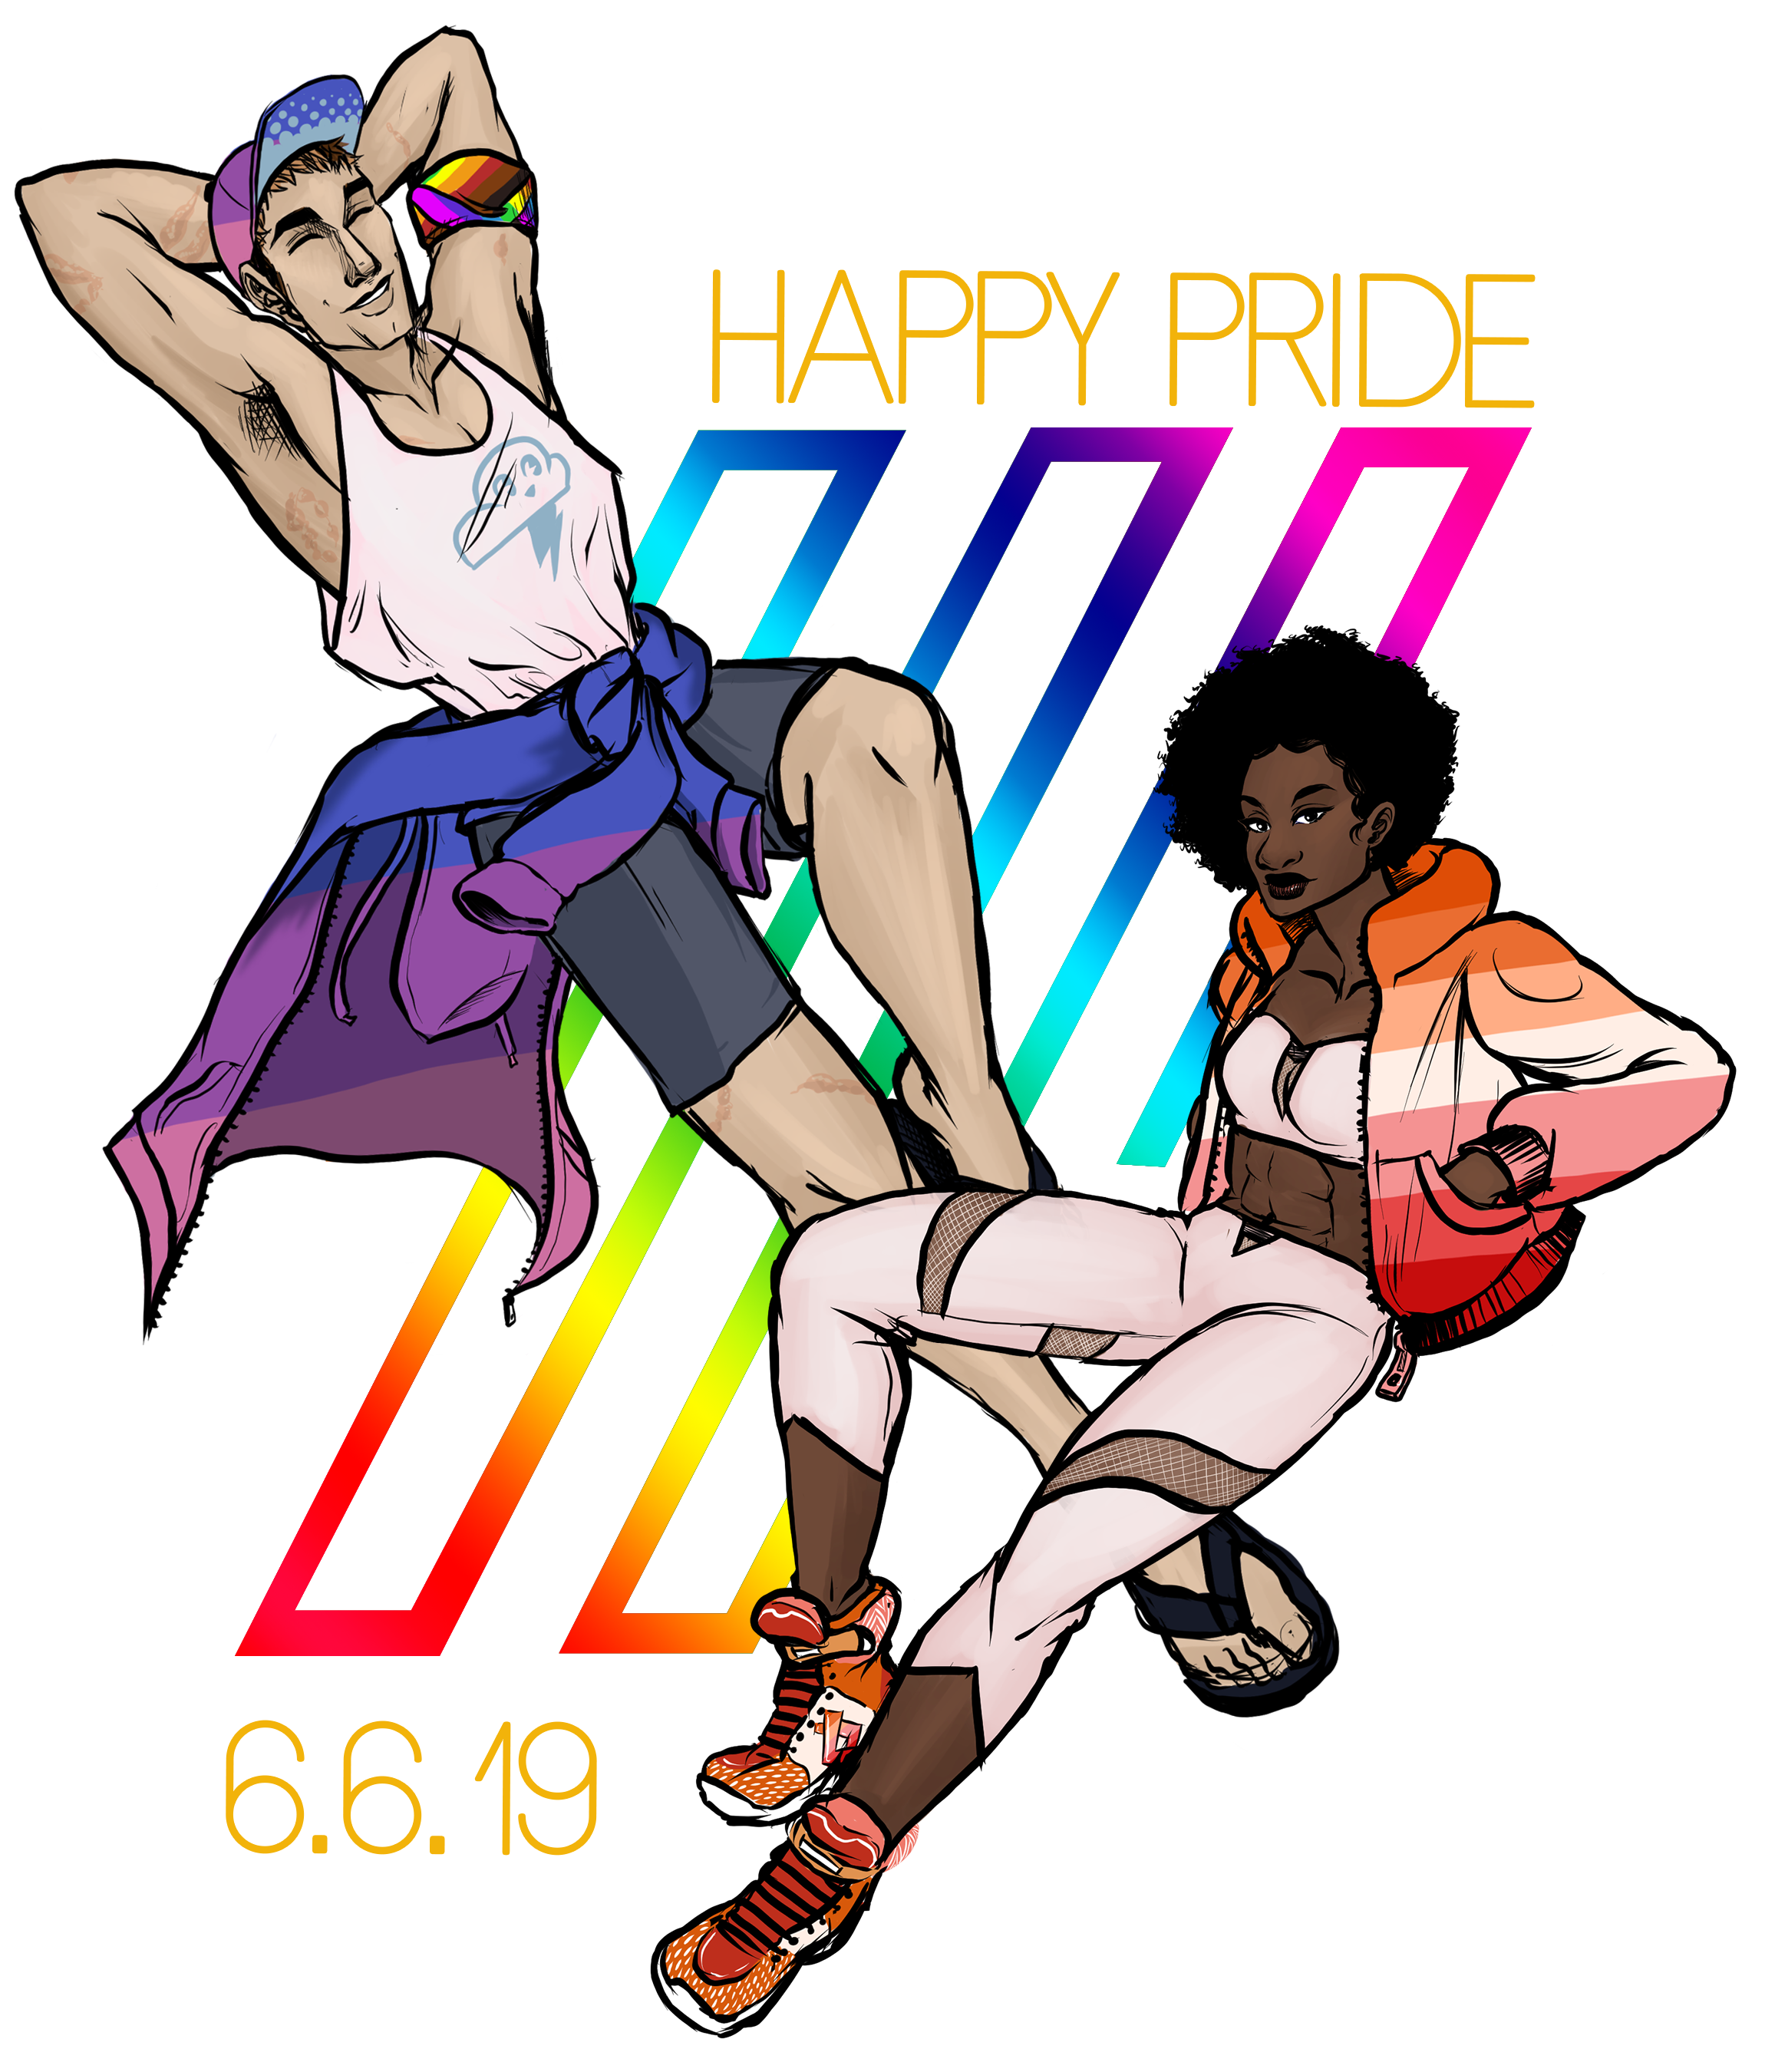 Walter sporting Bi pride colors, Simi wearing the Lesbian pride colors.